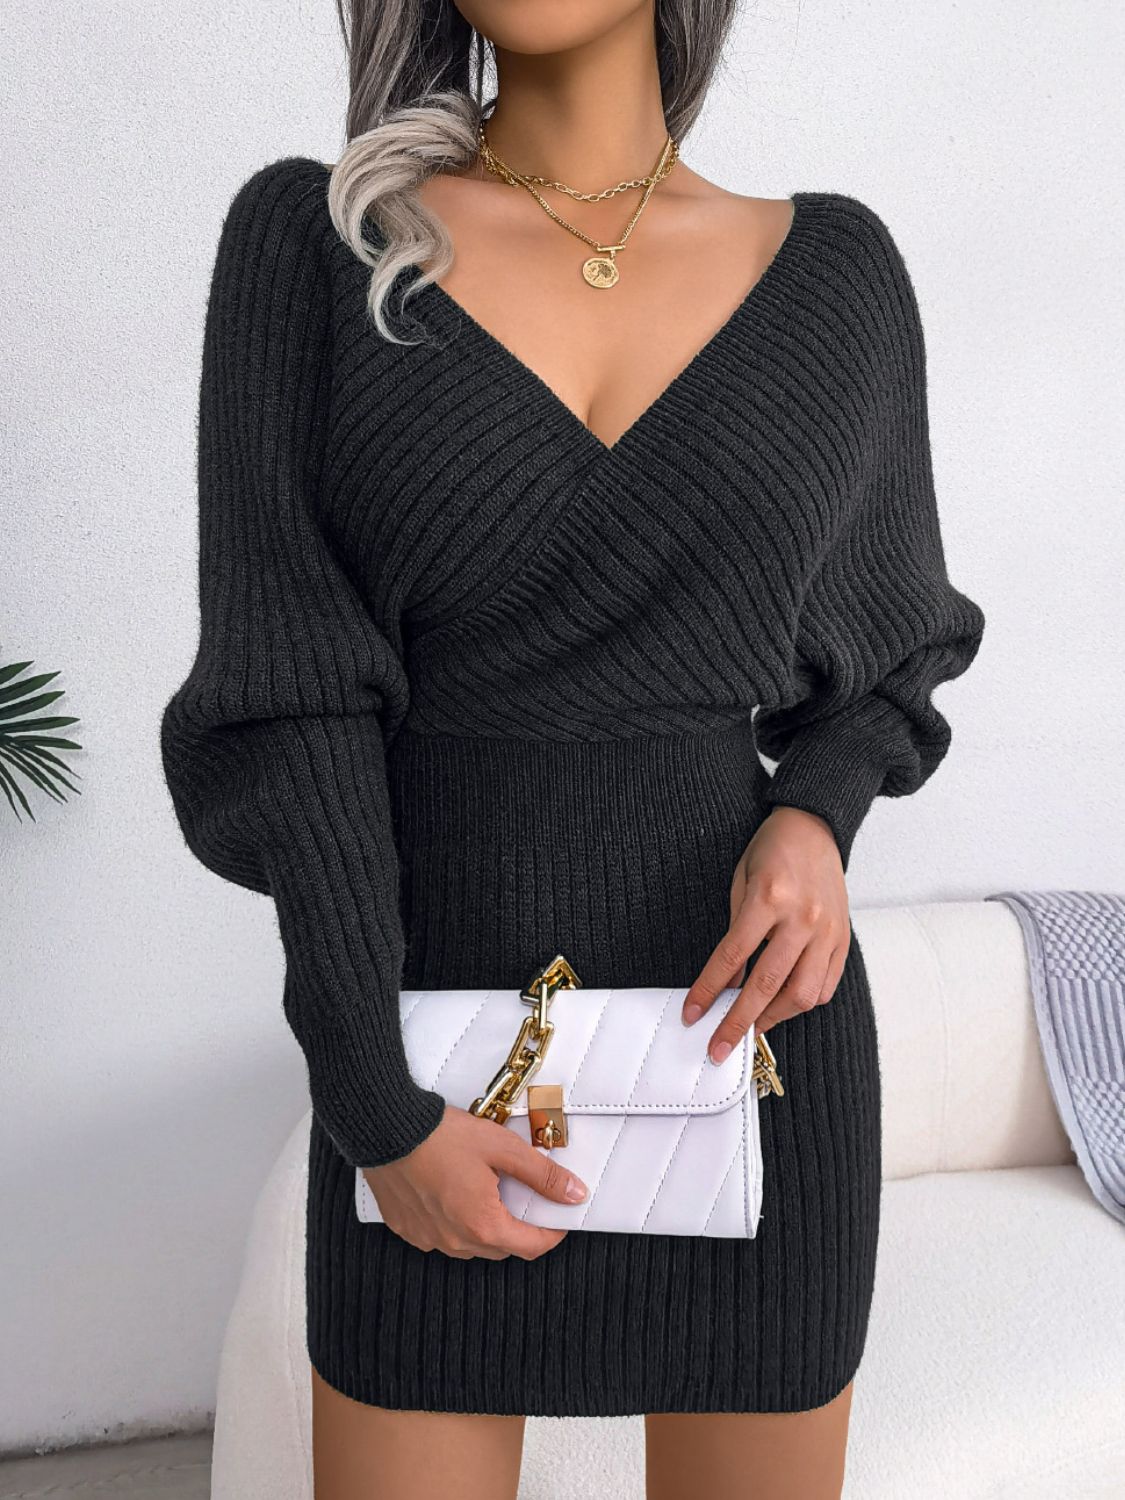 Elegant Mini Sweater Dress